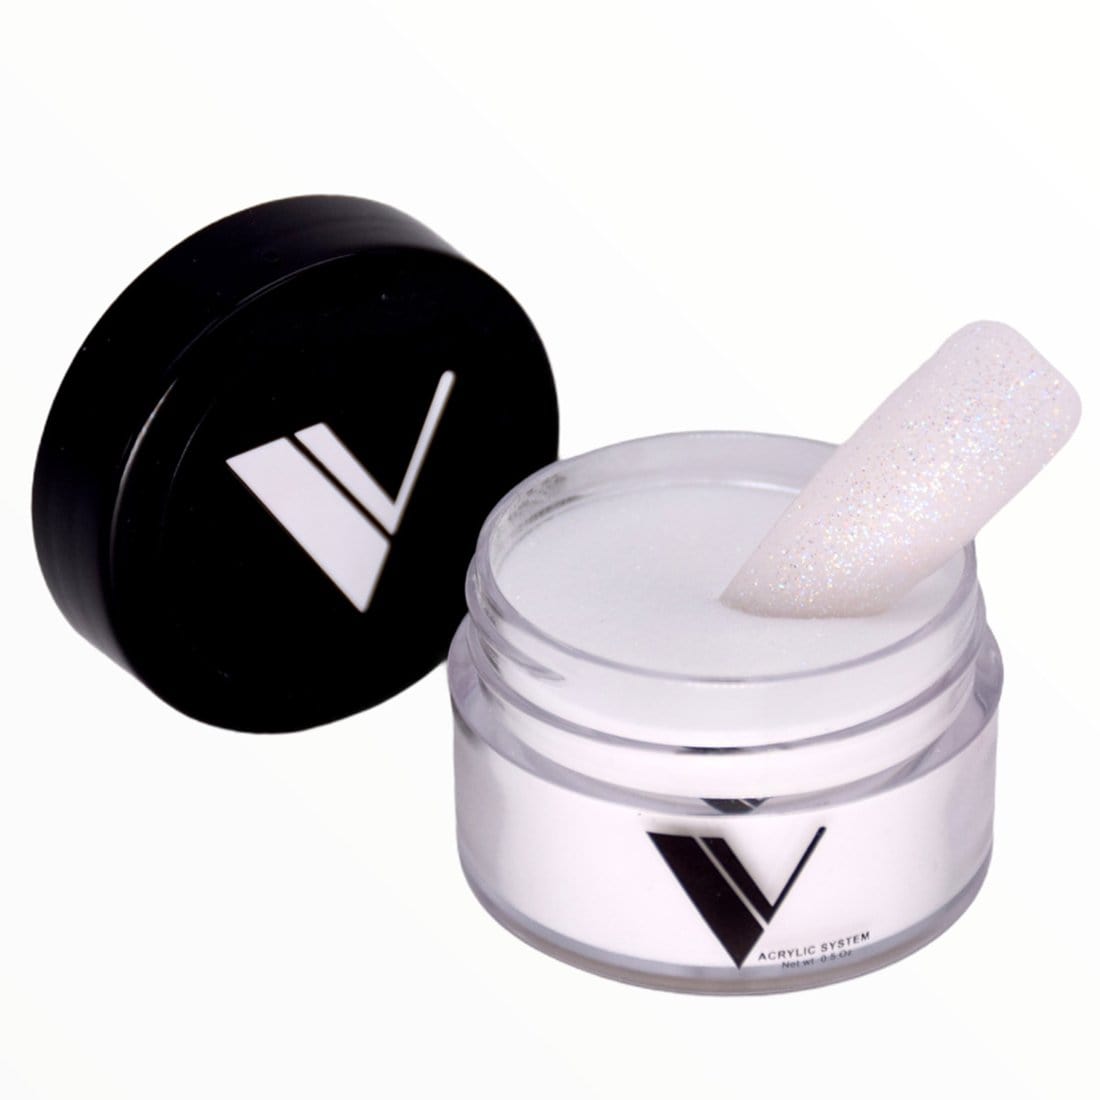 V Beauty Pure Acrylic Powder 0.5 oz 205 Glitterally